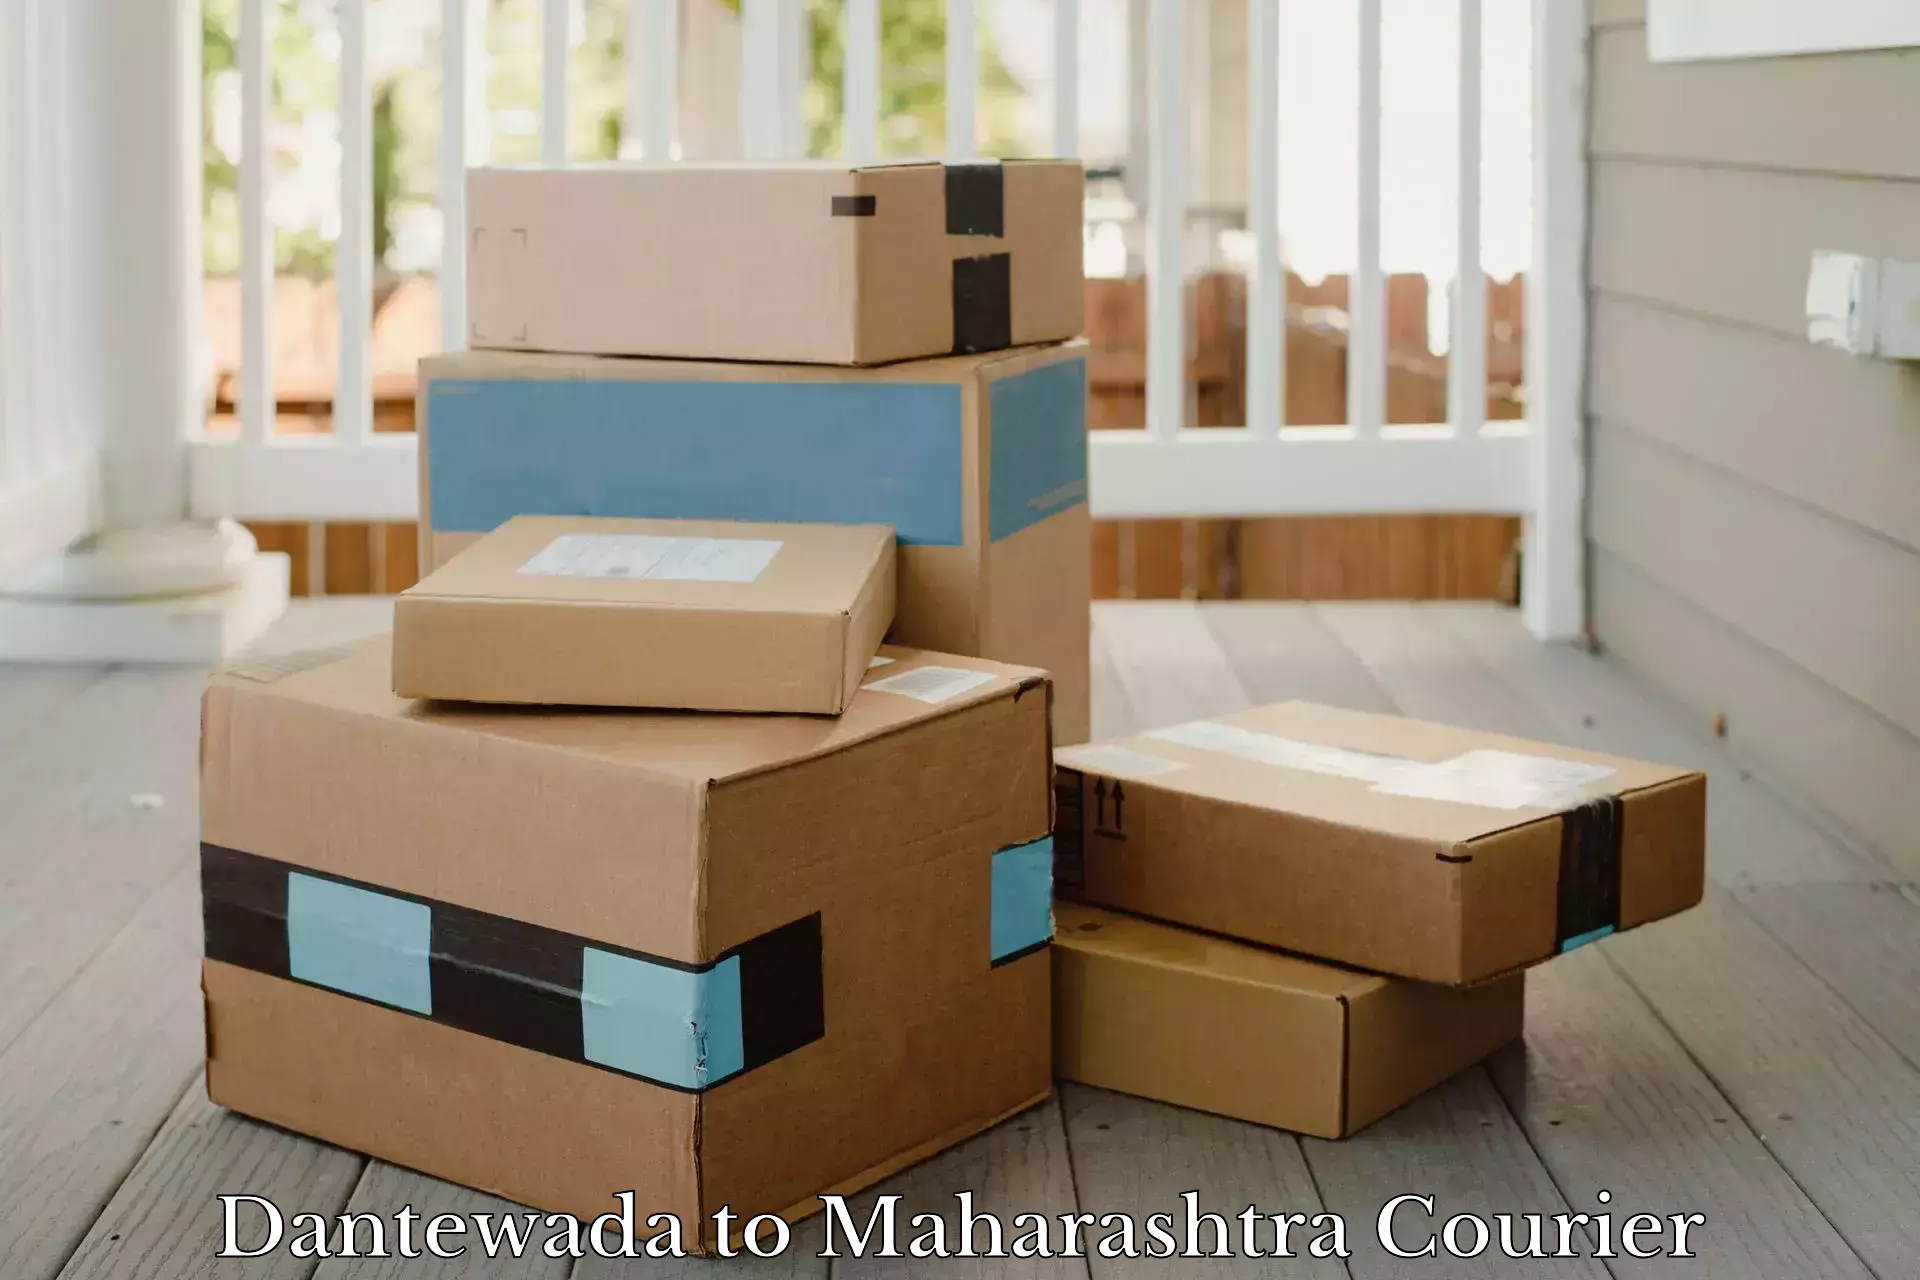 Customer-centric shipping Dantewada to Aheri